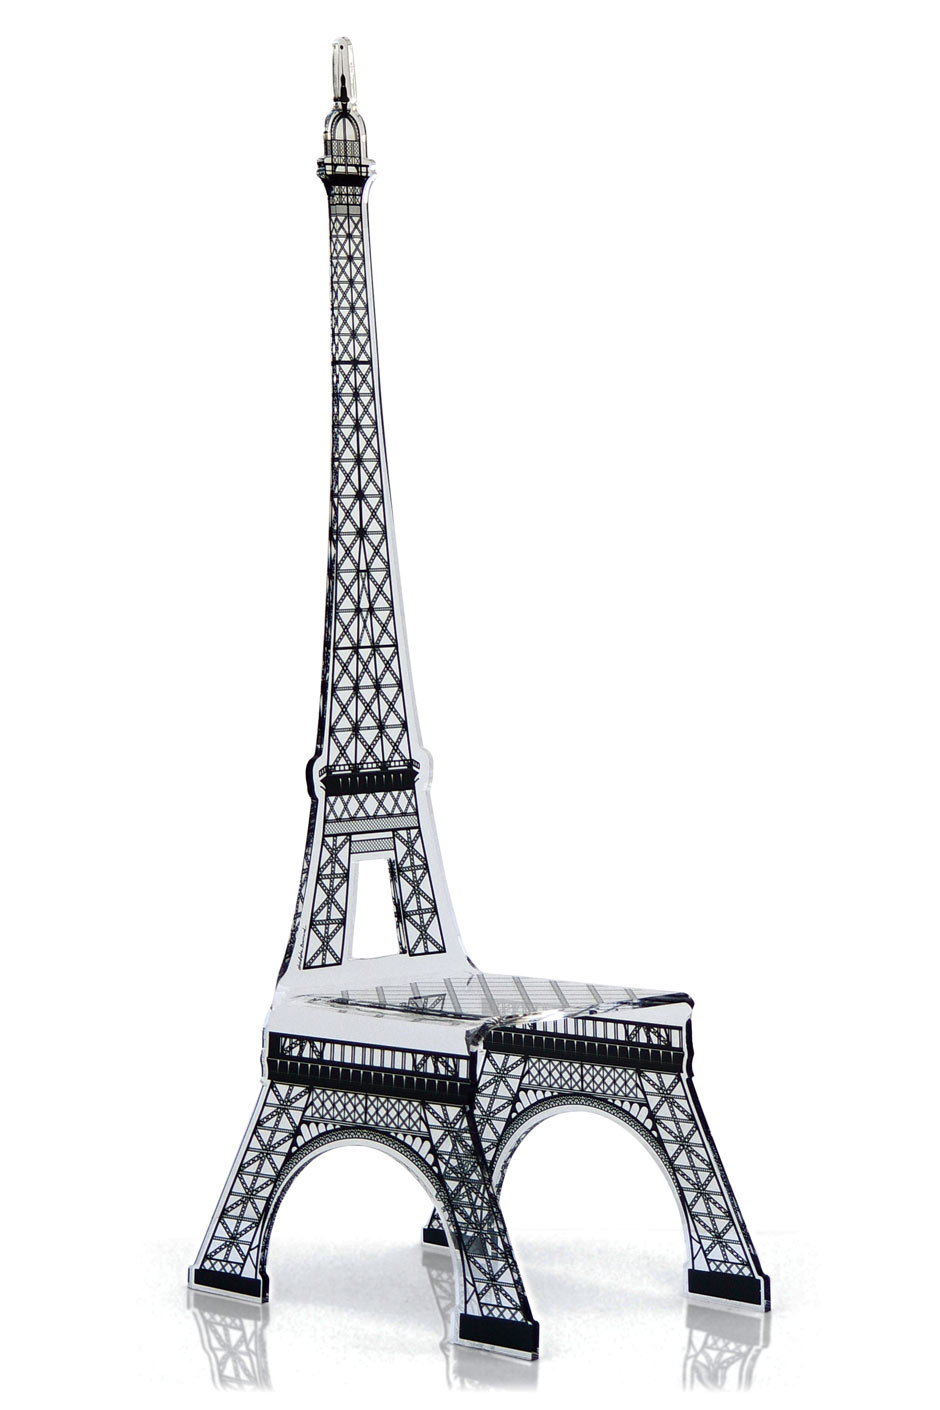 Chaise design Tour Eiffel haut dossier. Acrila. 